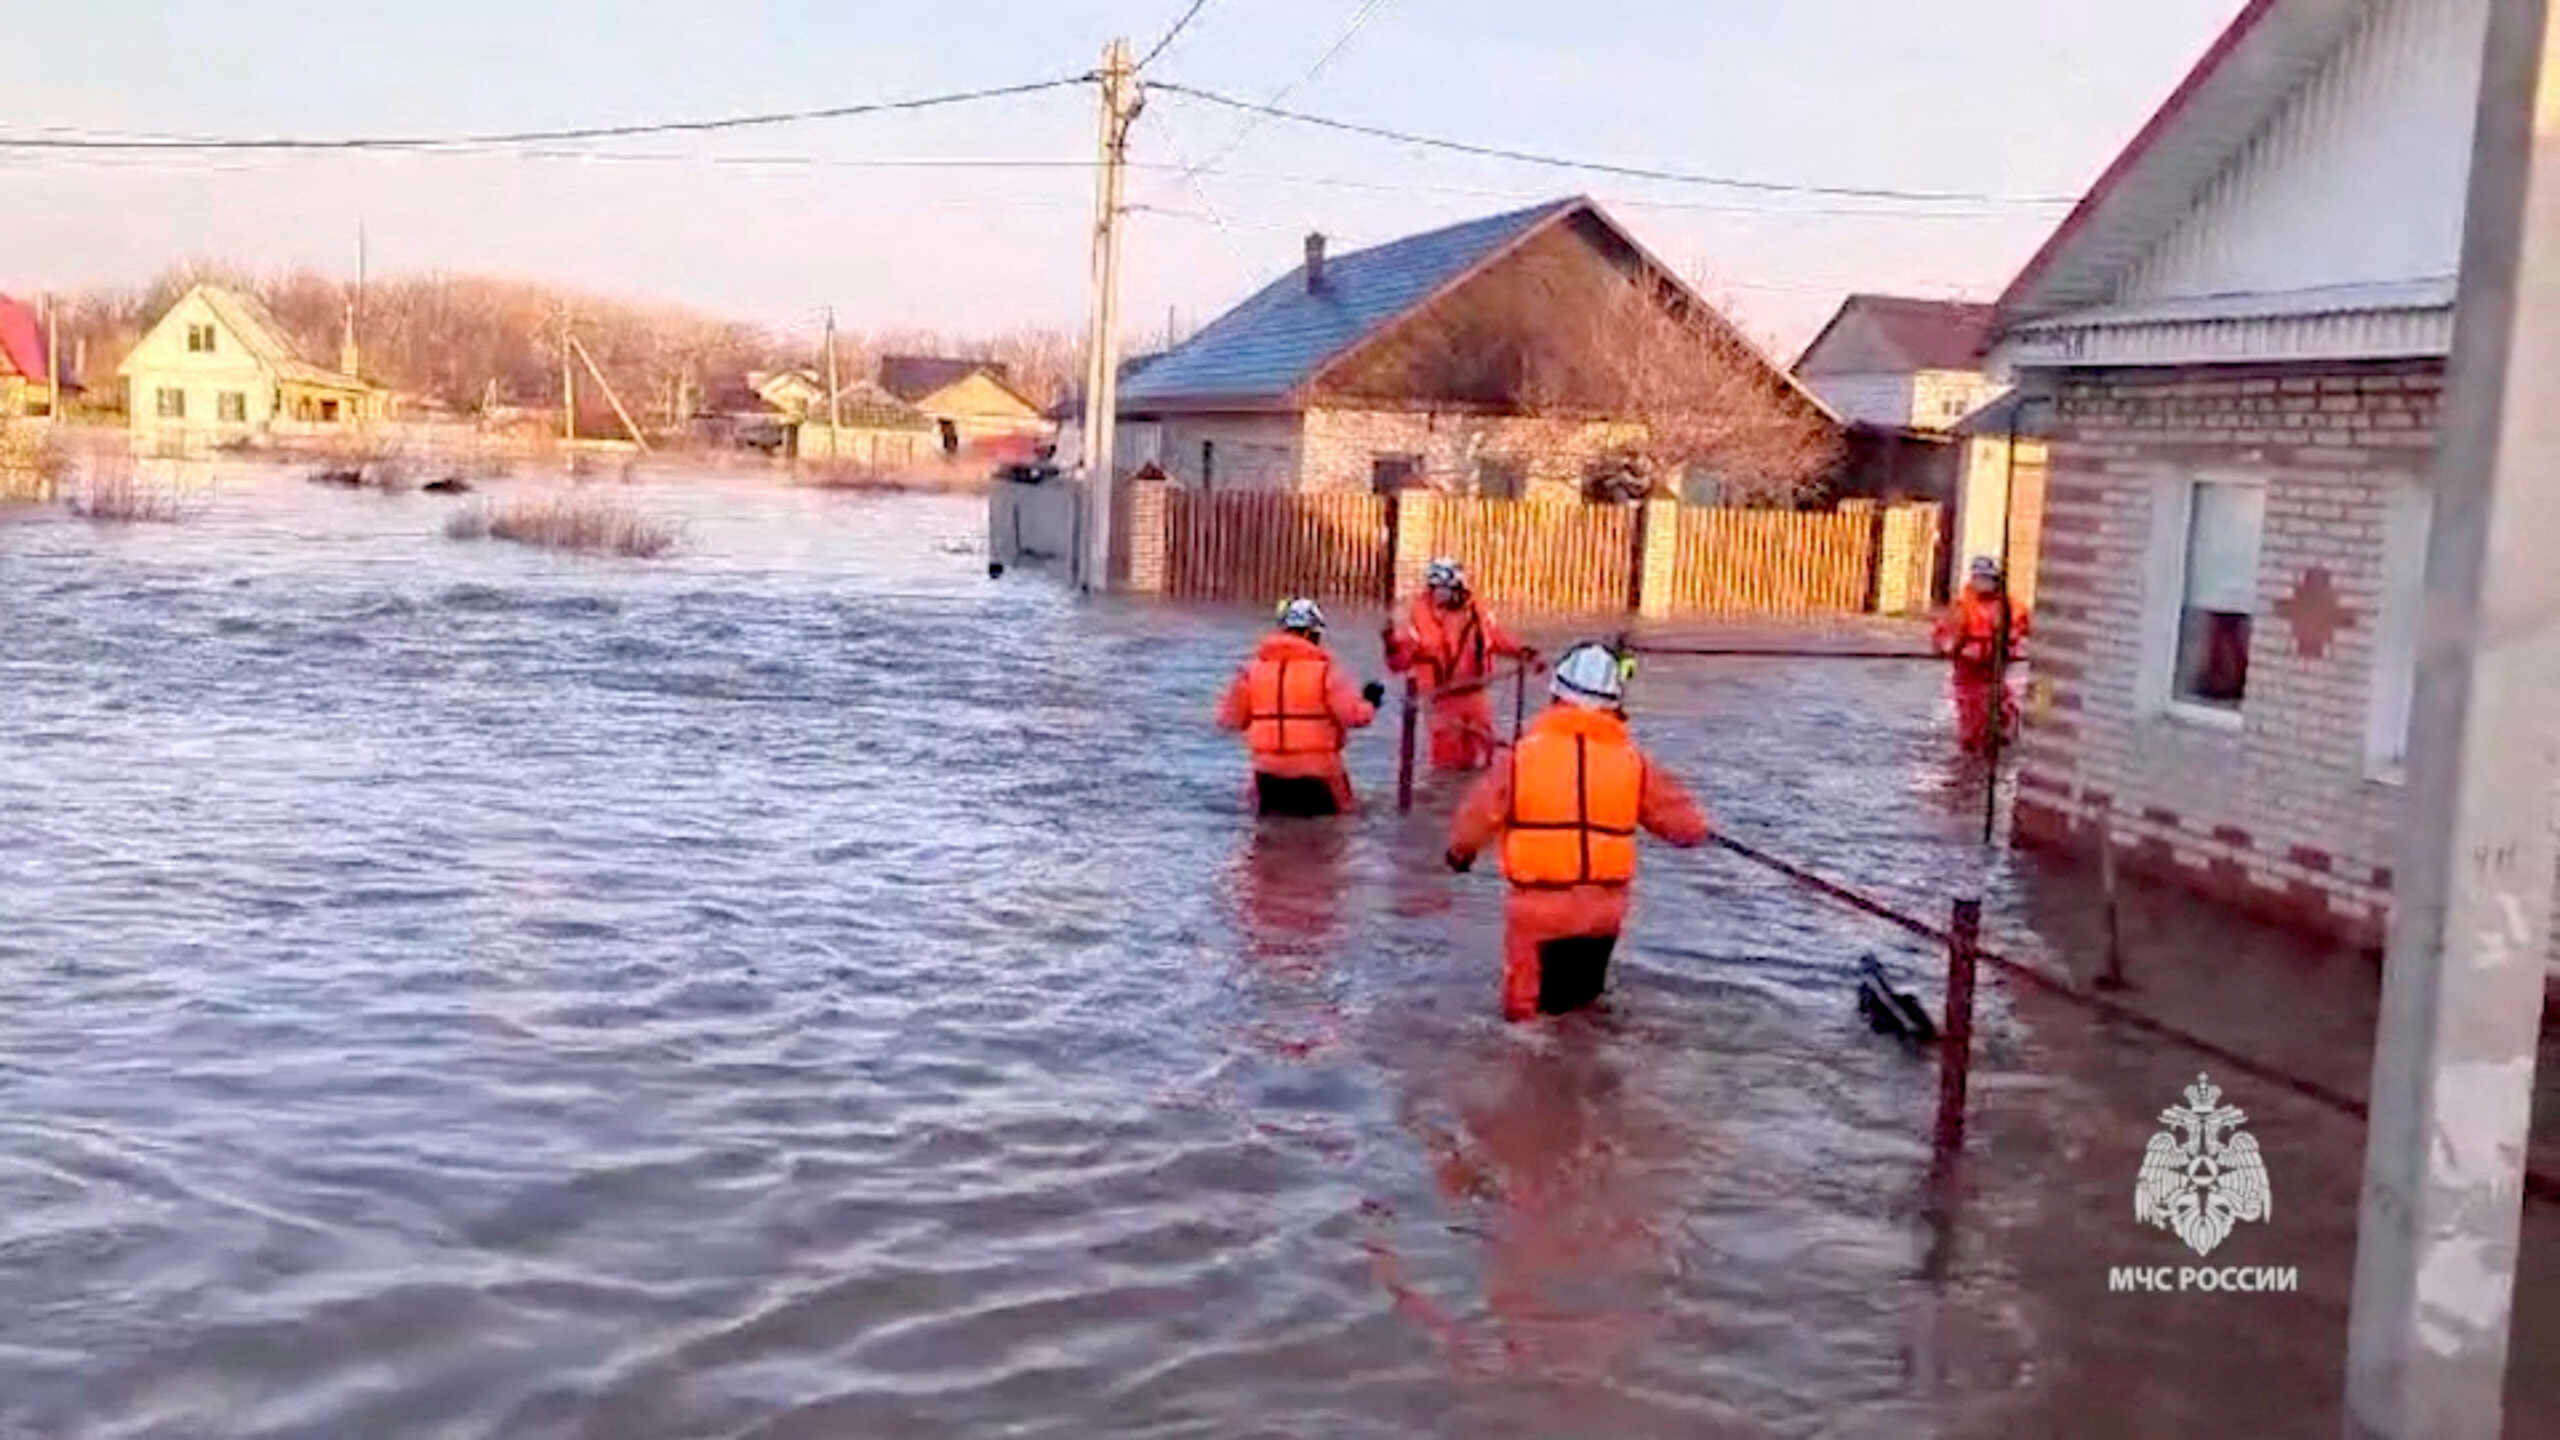 Ρωσία: Χιλιάδες άνθρωποι κινδυνεύουν από τις πλημμύρες νότια της χώρας